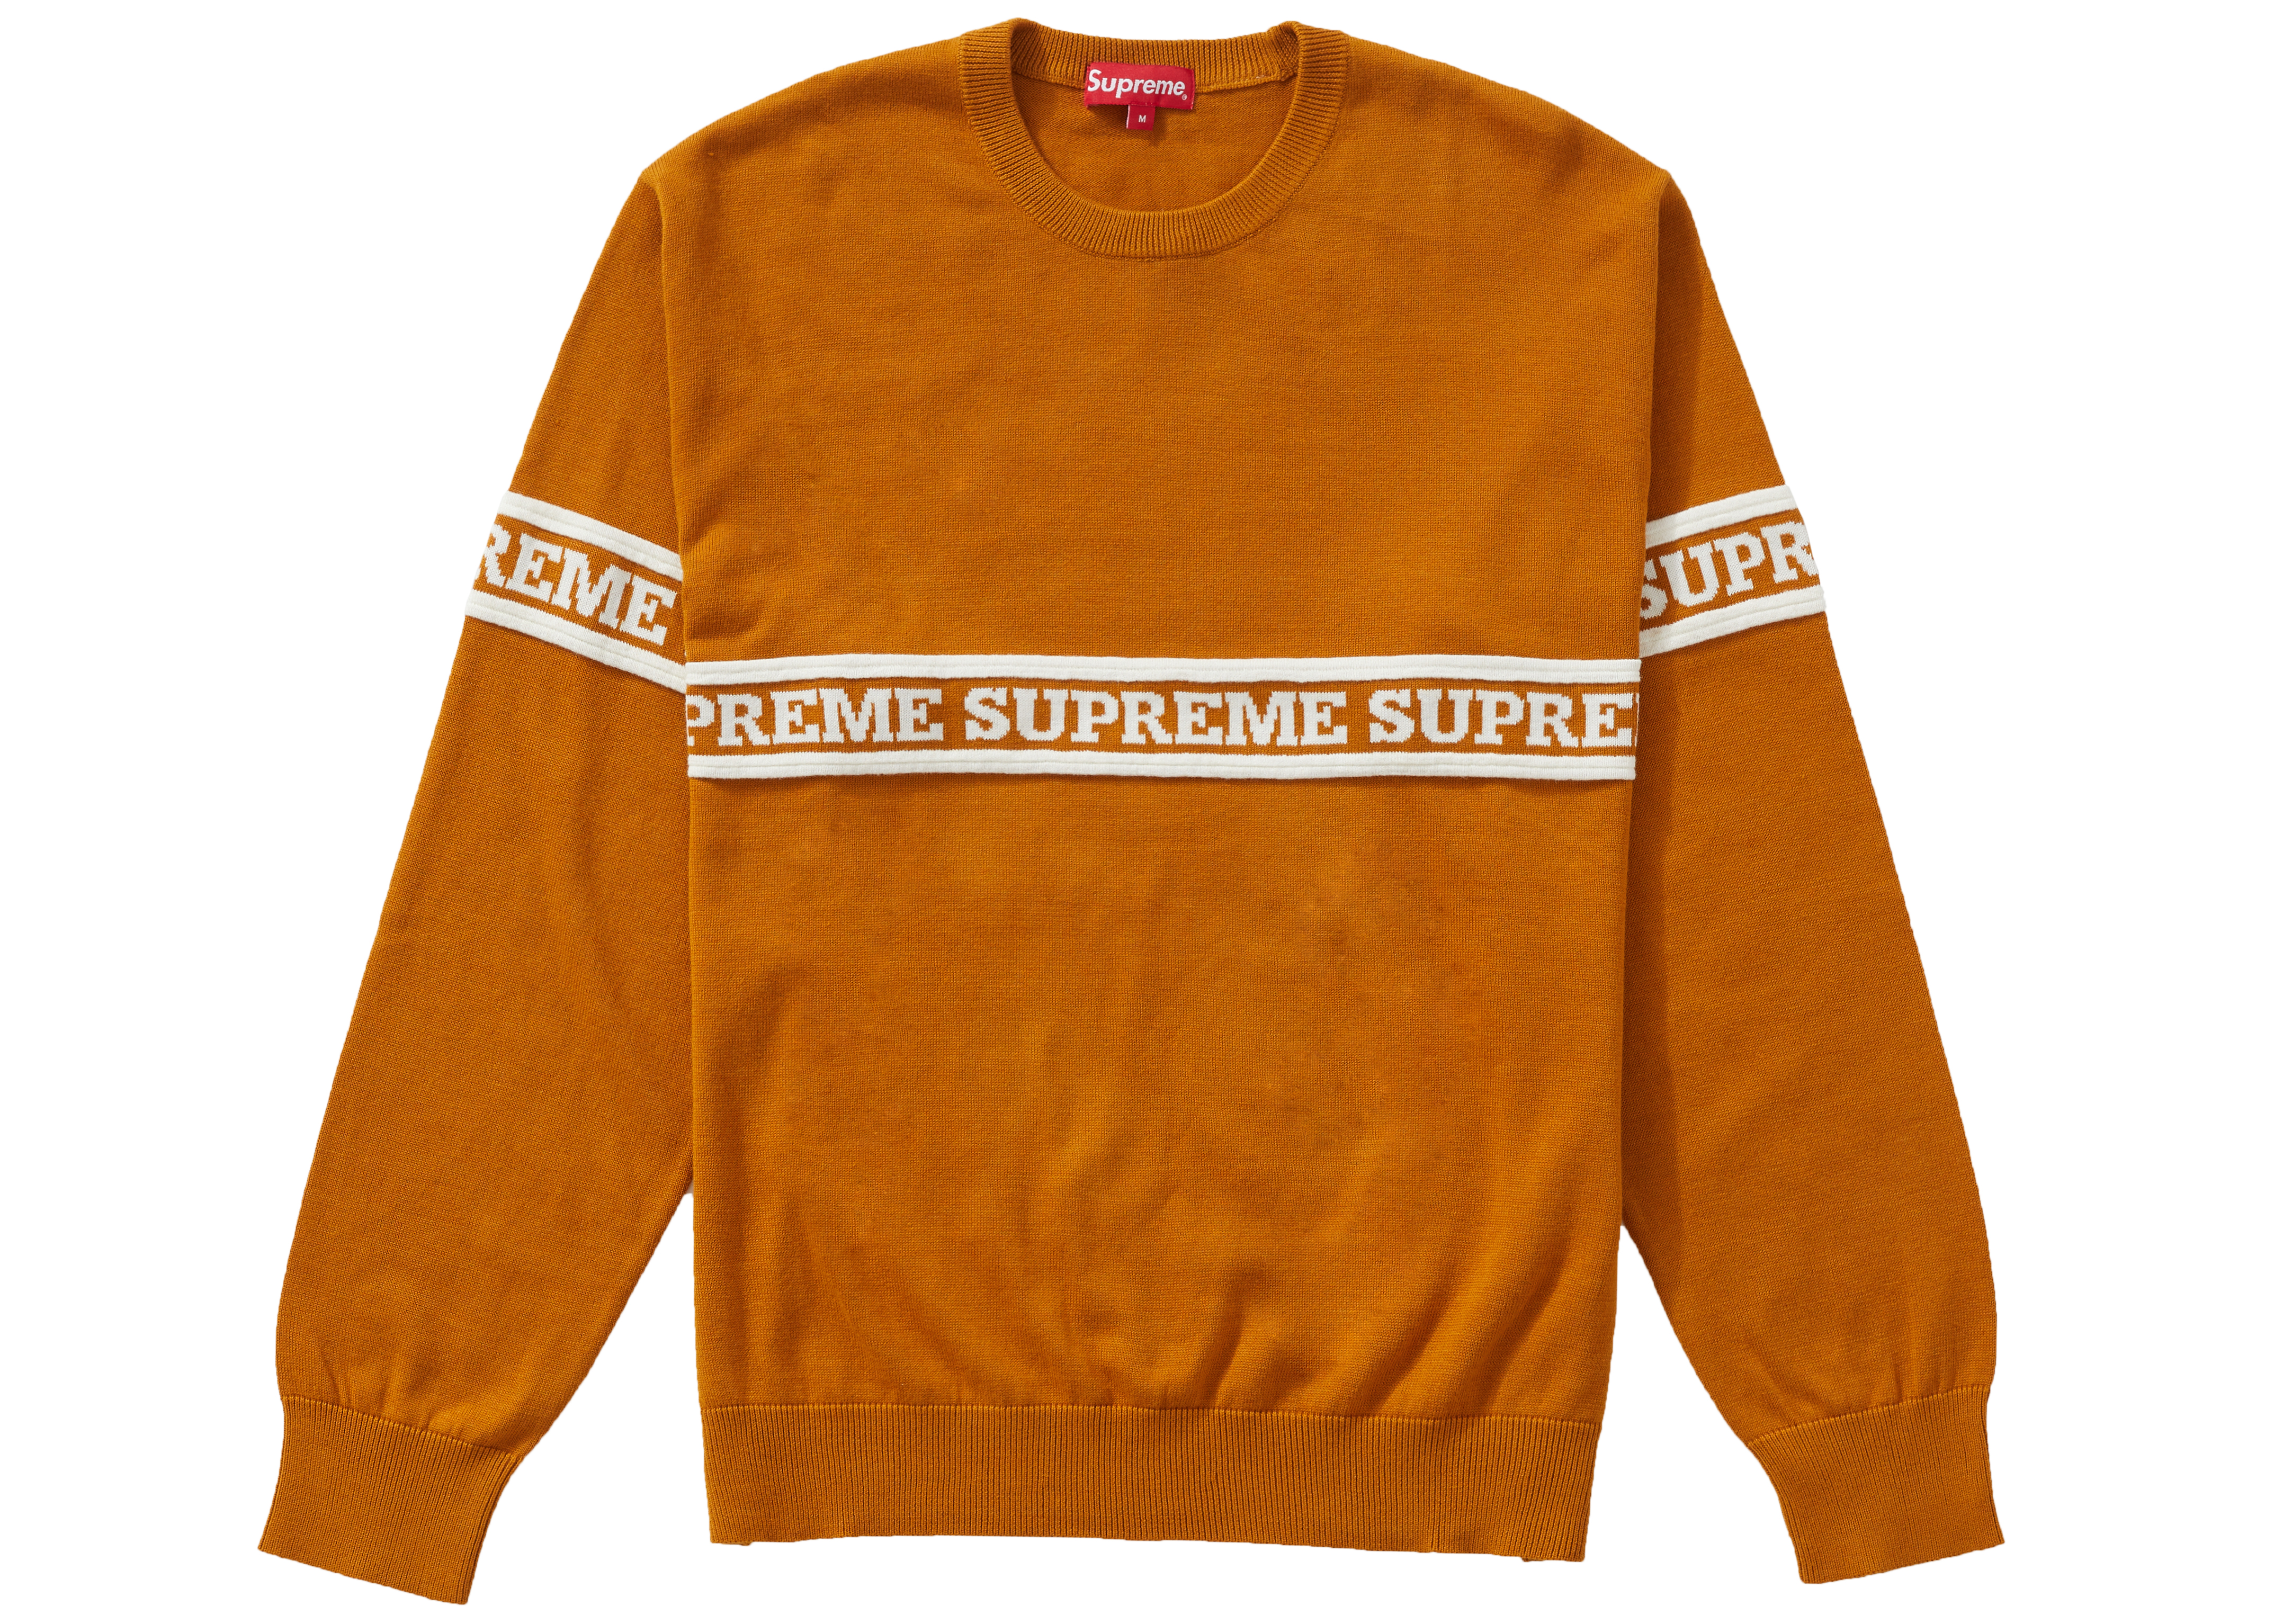 supreme Logo Stripe Knit Top